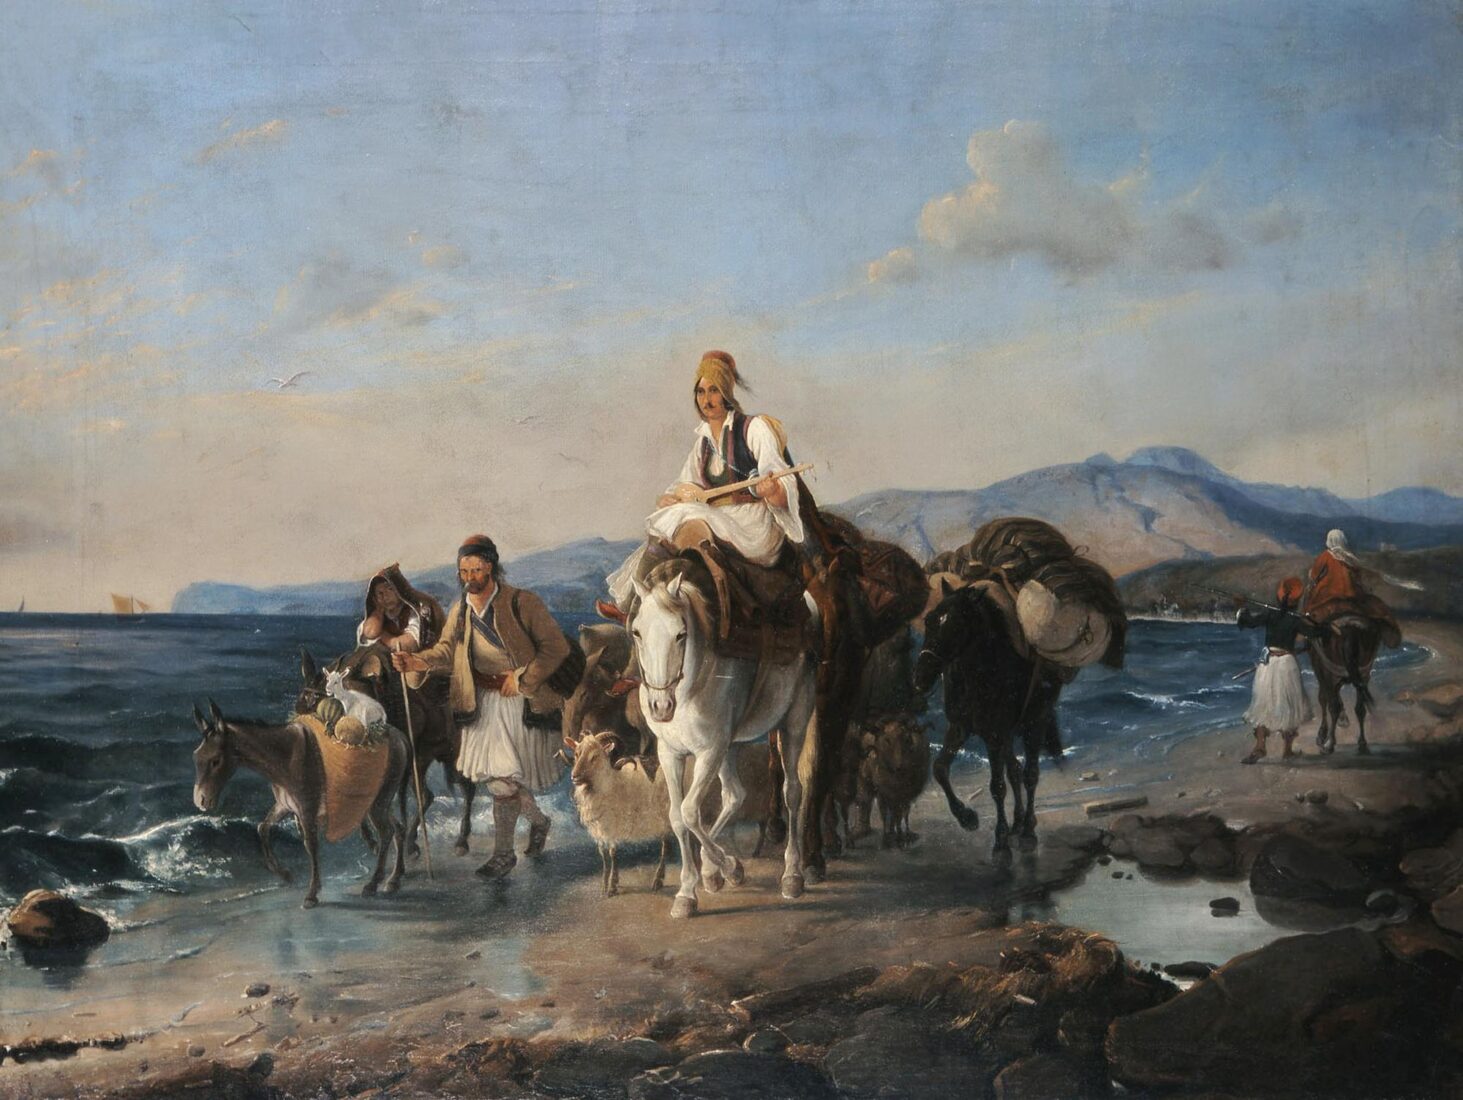 Φυγή μετά την καταστροφή από τους Τούρκους στην παραλία της Επιδαύρου - Hess Peter von, κατά το πρότυπο